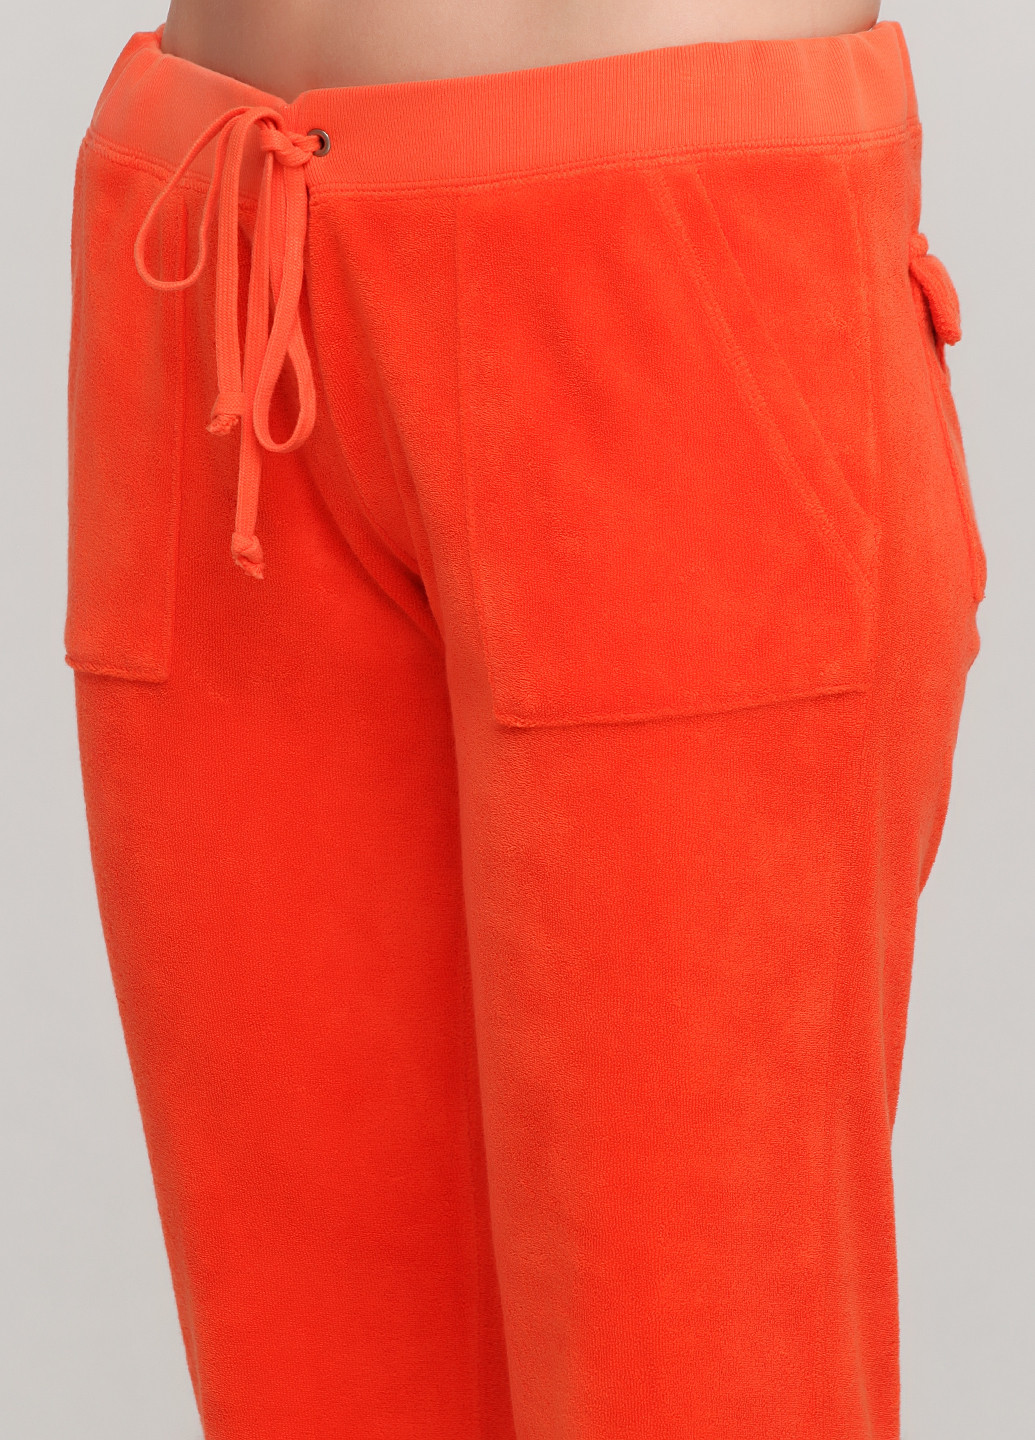 Костюм (толстовка, брюки) Juicy Couture брючный однотонный оранжевый спортивный